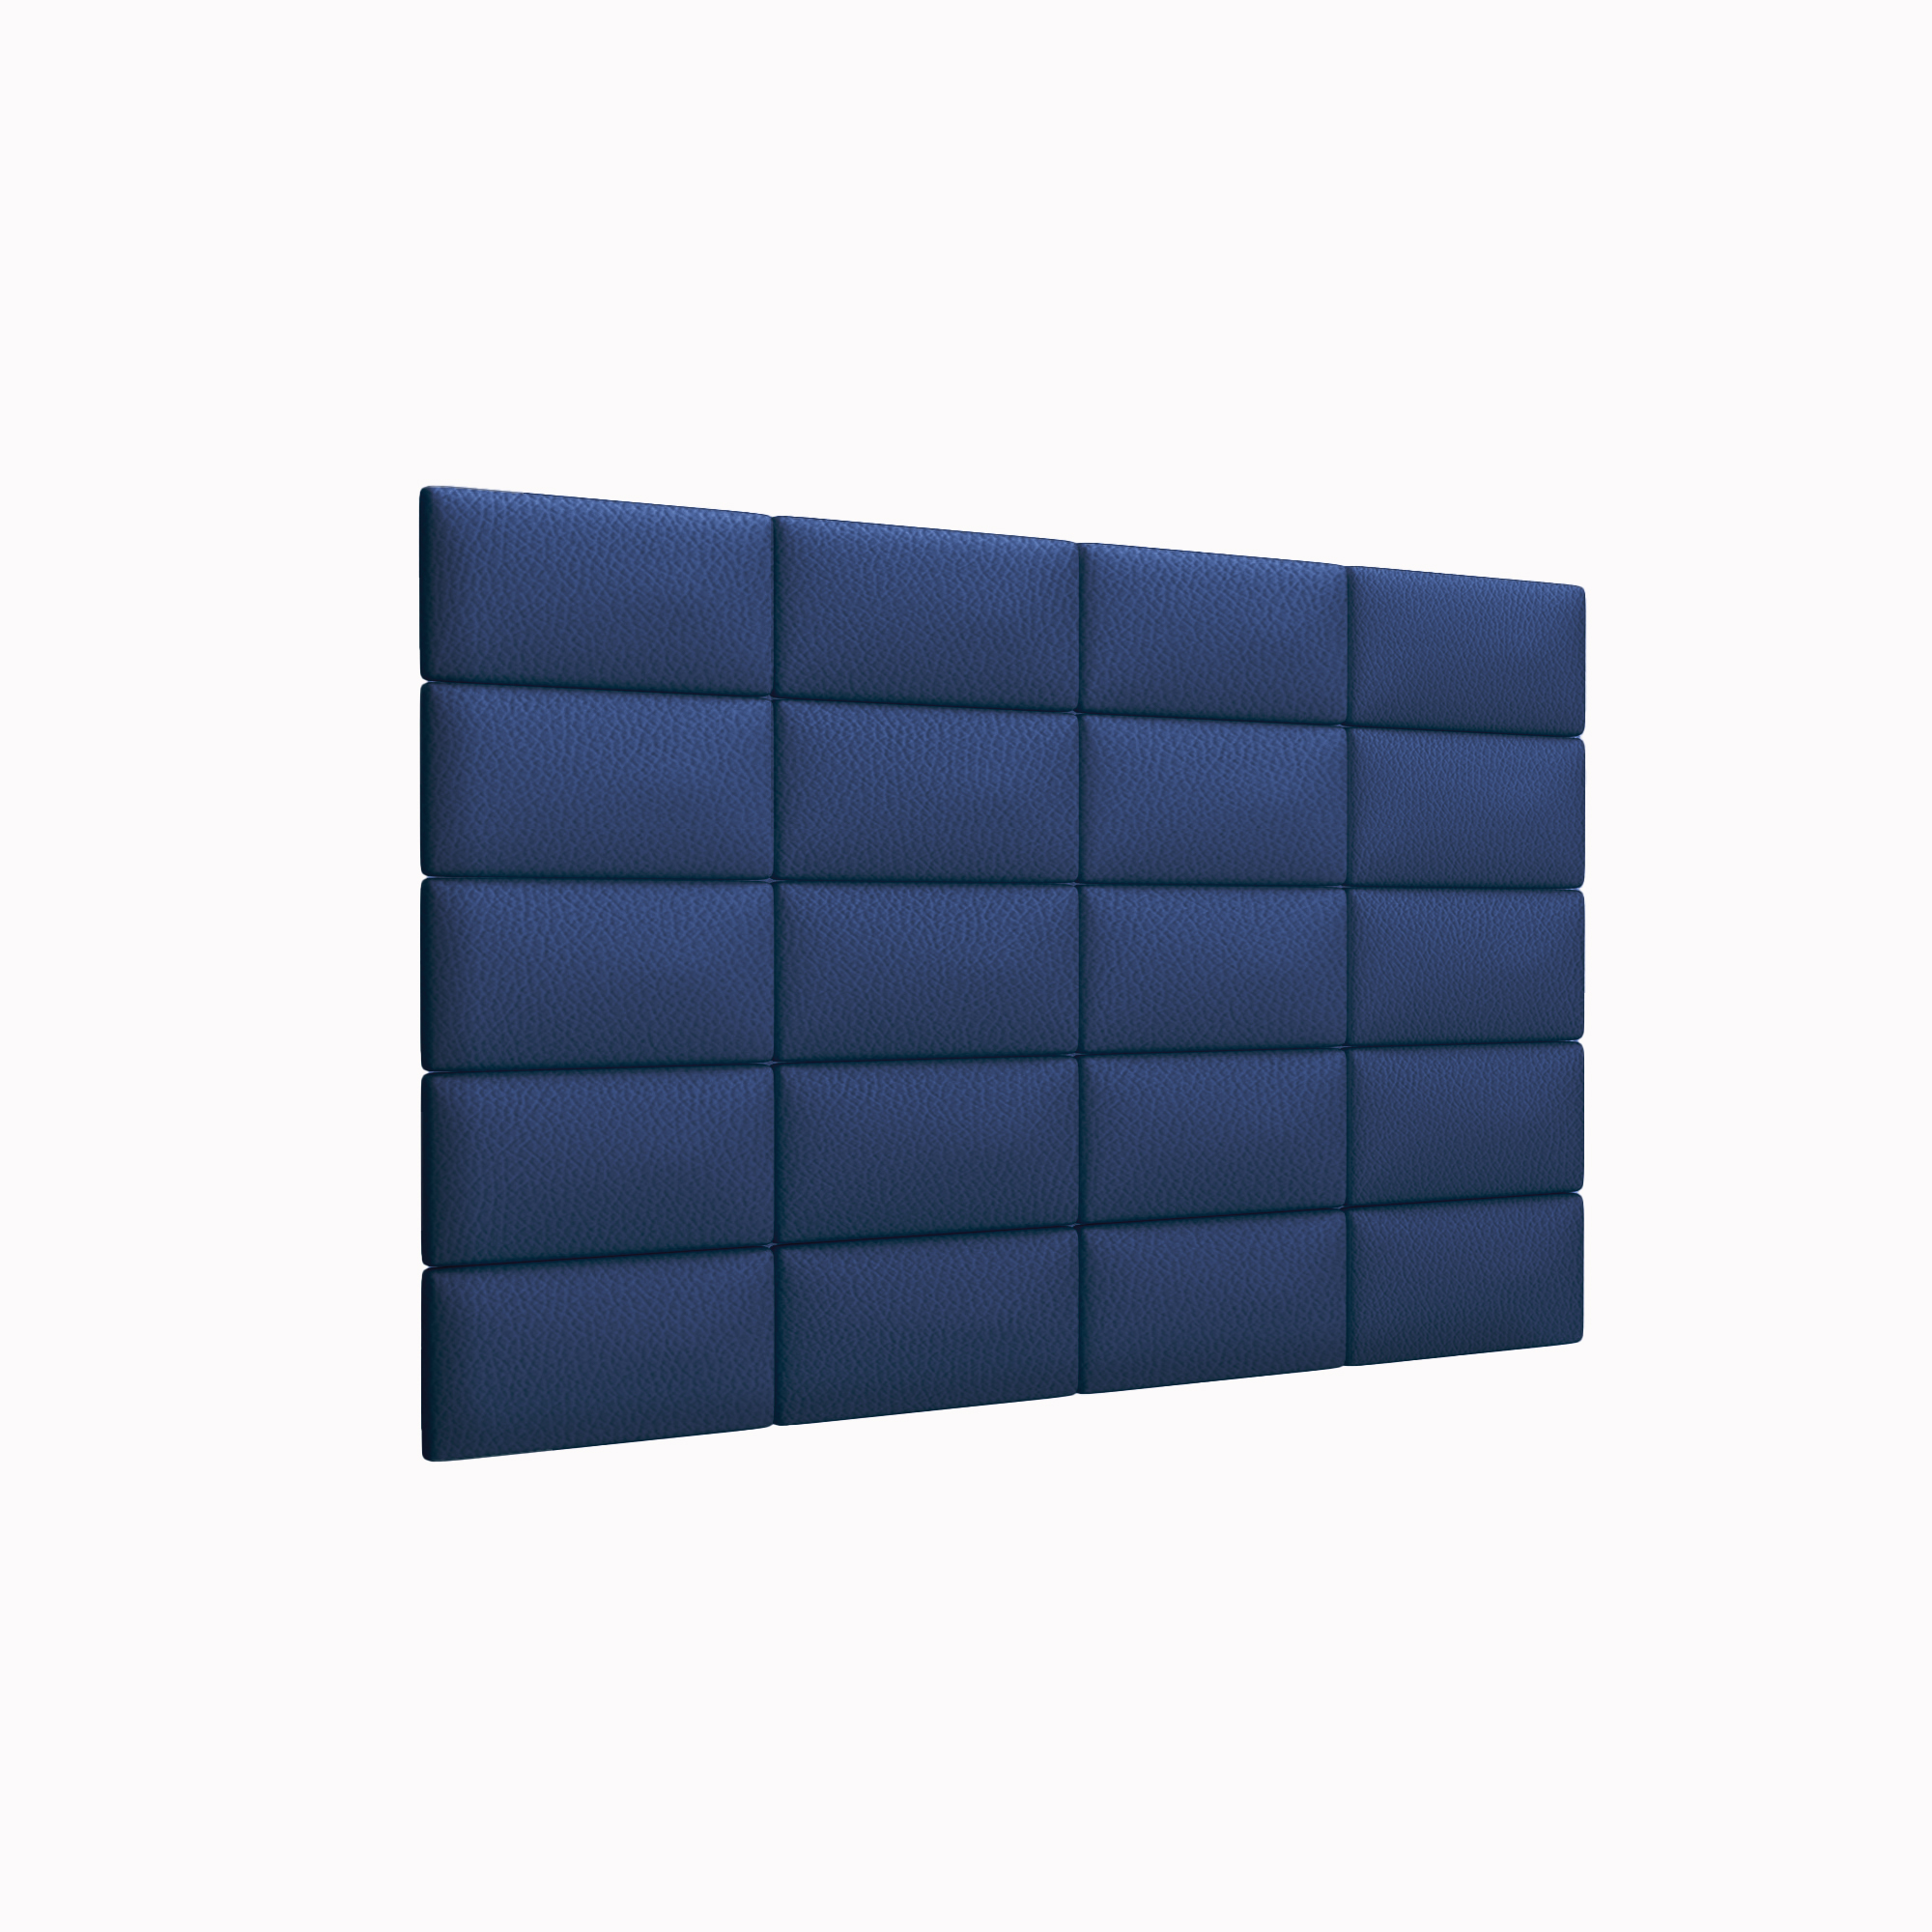 Мягкие стеновые панели Eco Leather Blue 15х30 см 4 шт. пуходерка пластиковая с самоочисткой большая 12 х 20 см синяя